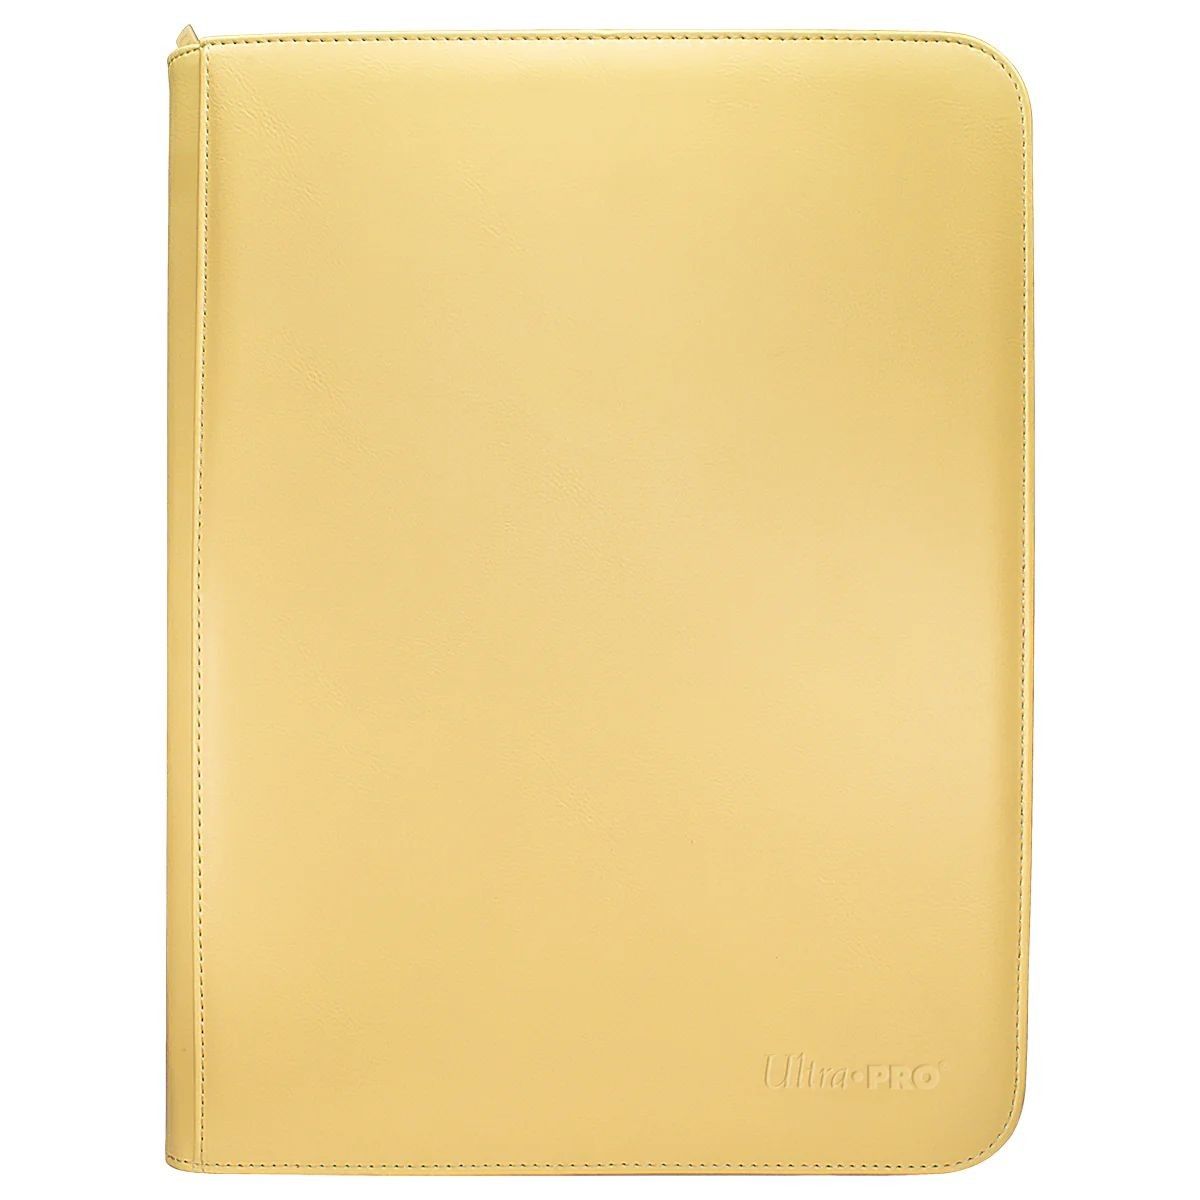 Ultra Pro – Pro-Binder Premium – Leuchtendes Gelb (360)